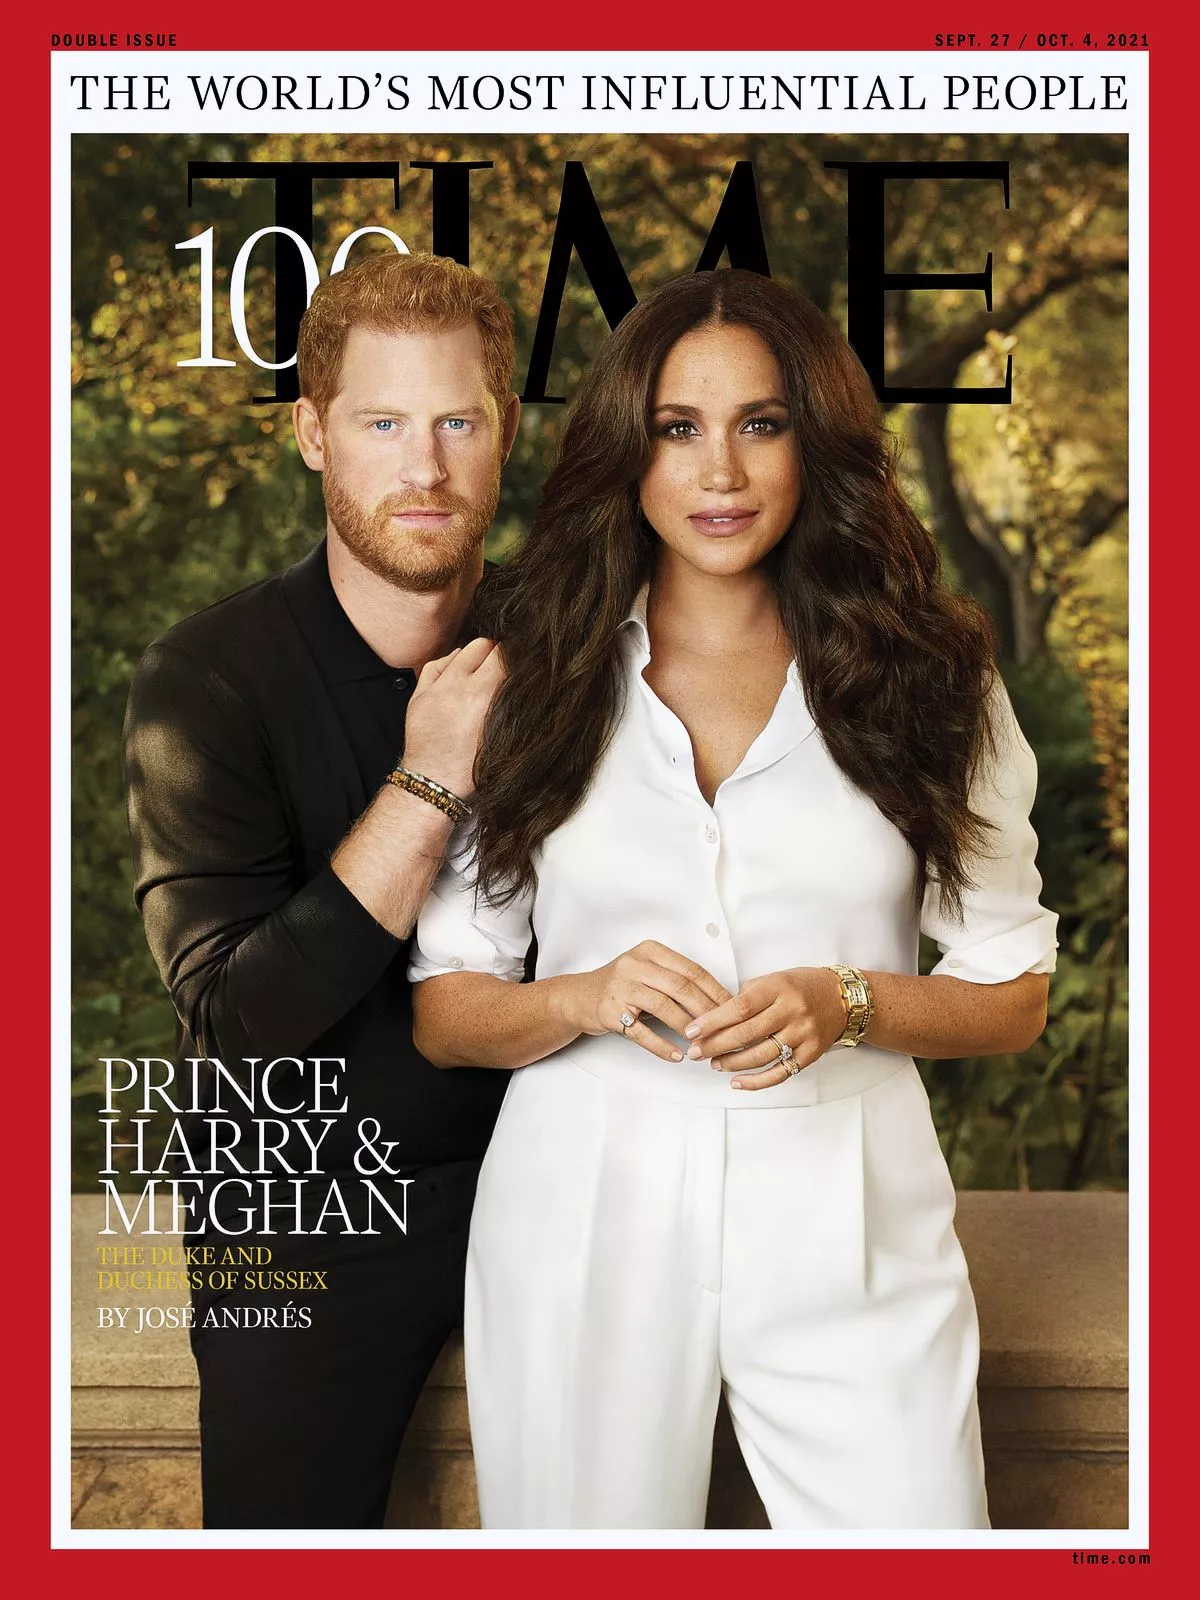 Гарри и Меган на обложке журнала Time 100 самых влиятельных людей